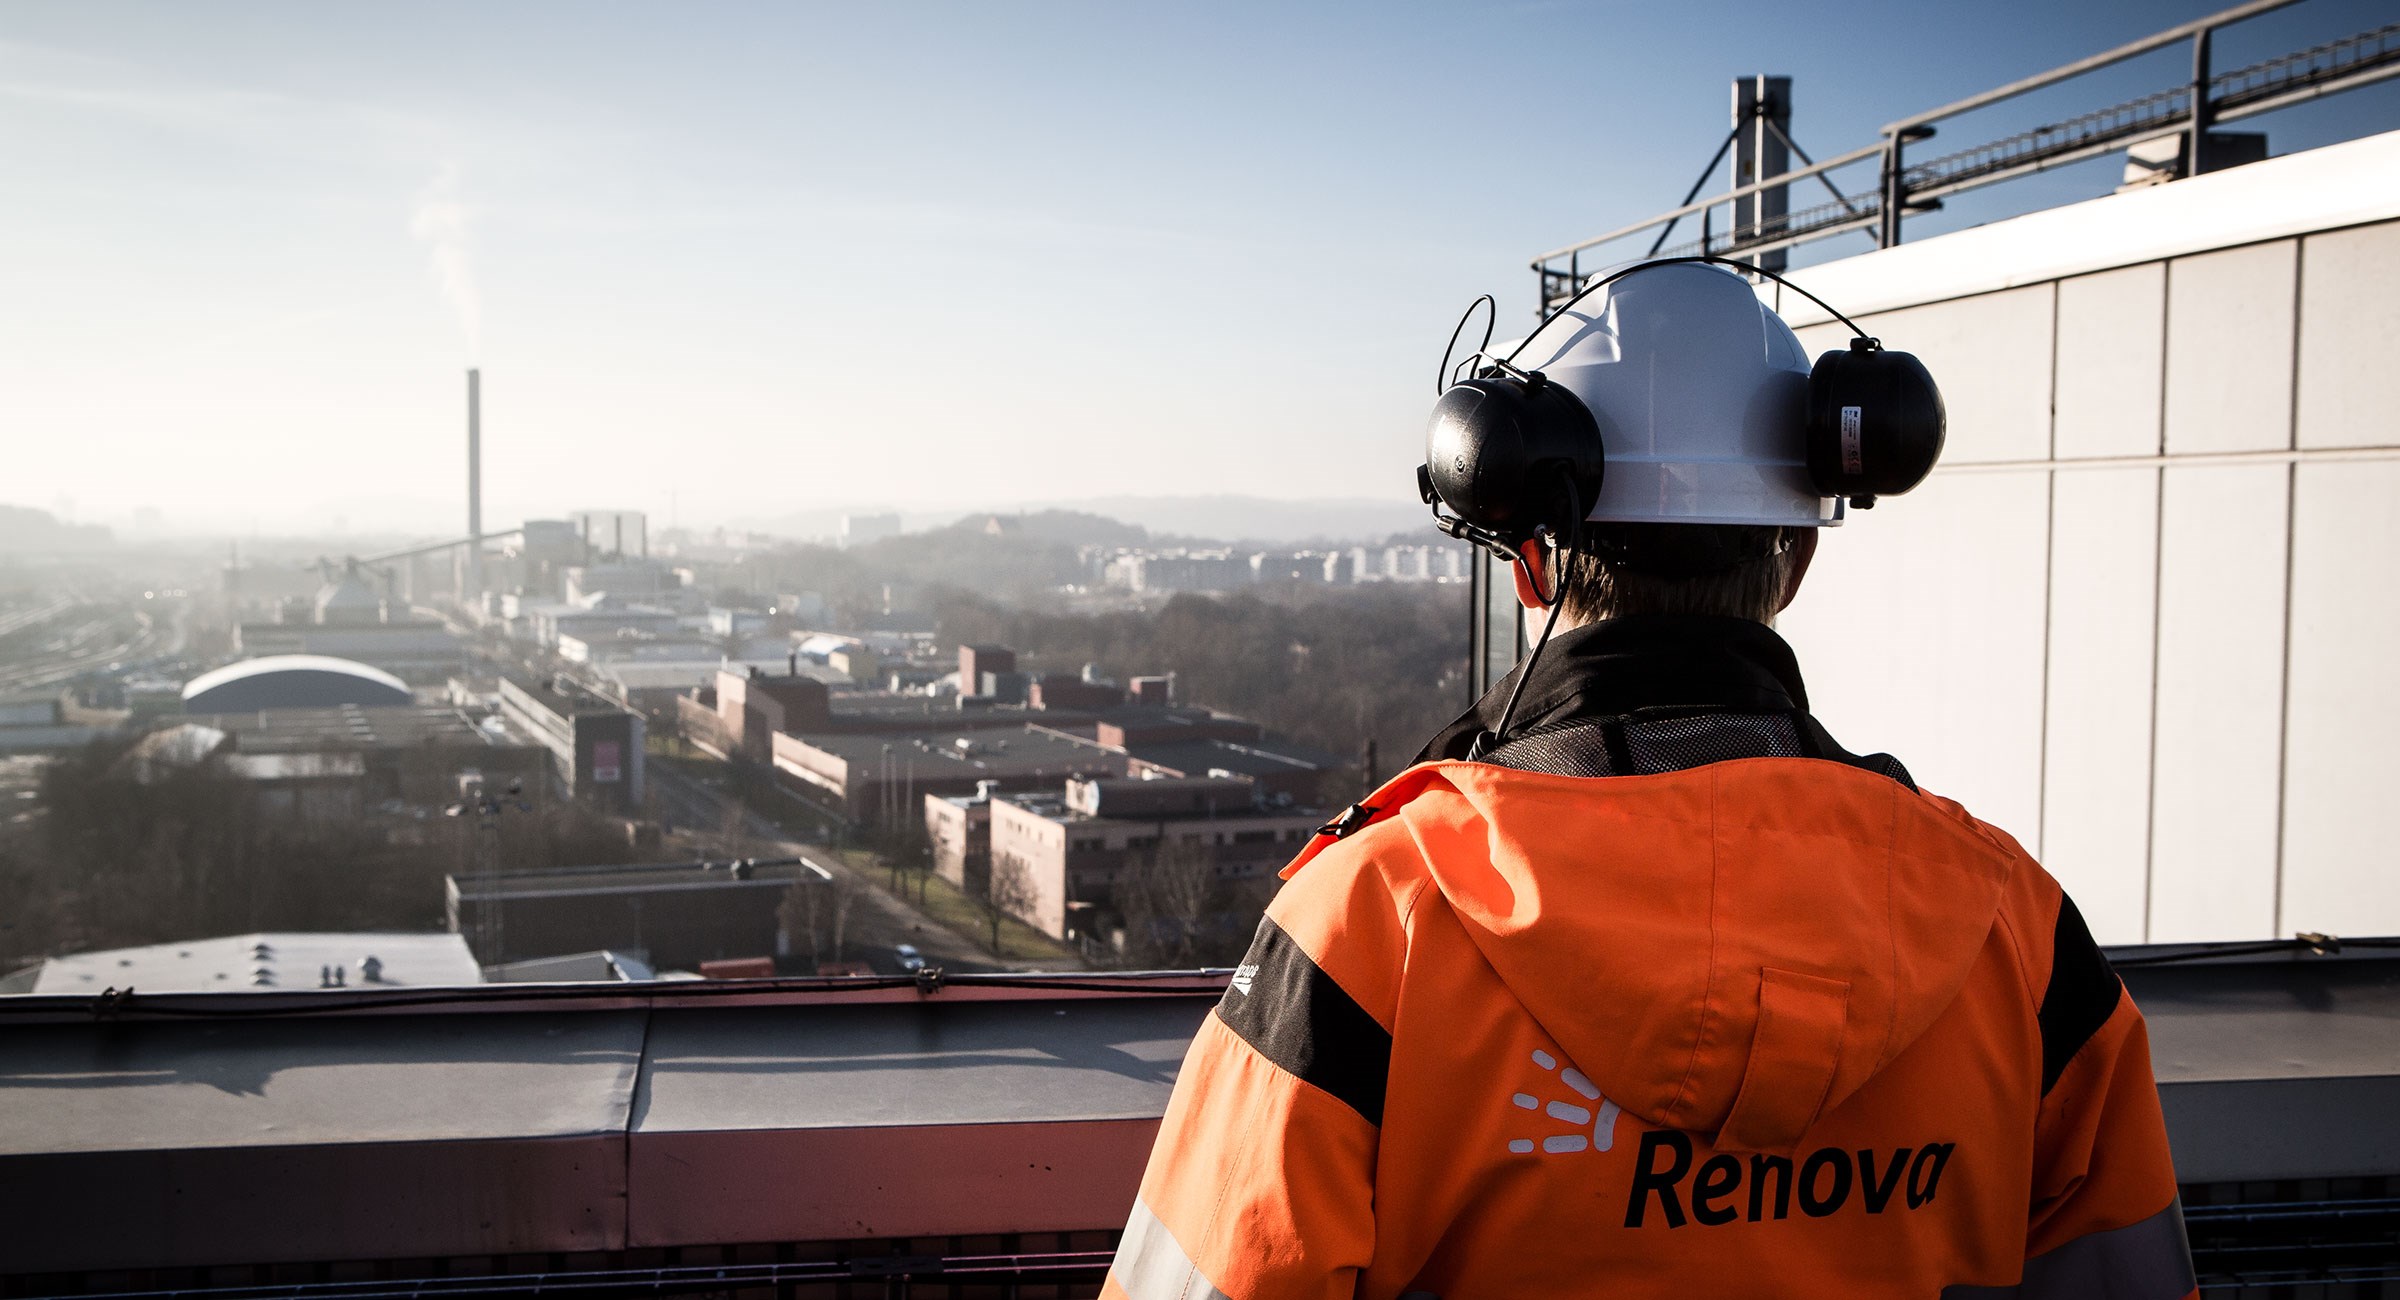 Renovaanställd tittar ut över Göteborg uppe på avfallskraftvärmeverket